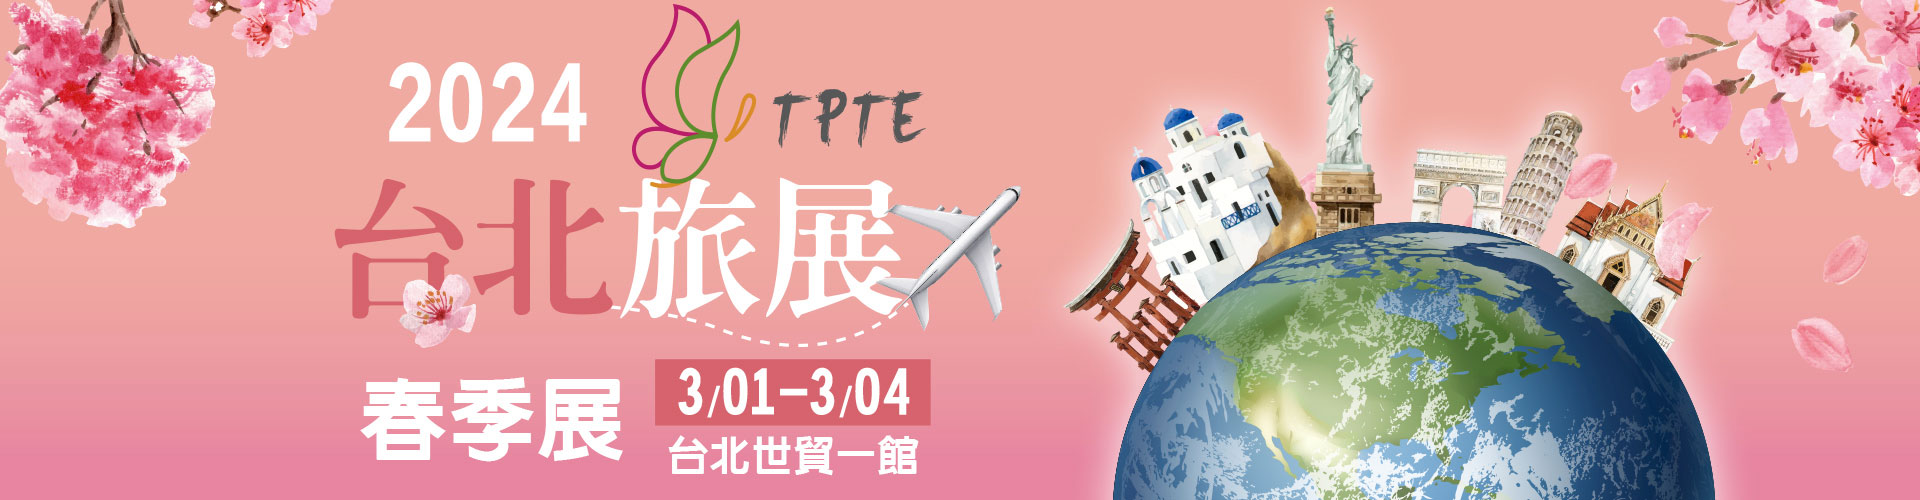 2024  台北旅展 TPTE 春季展